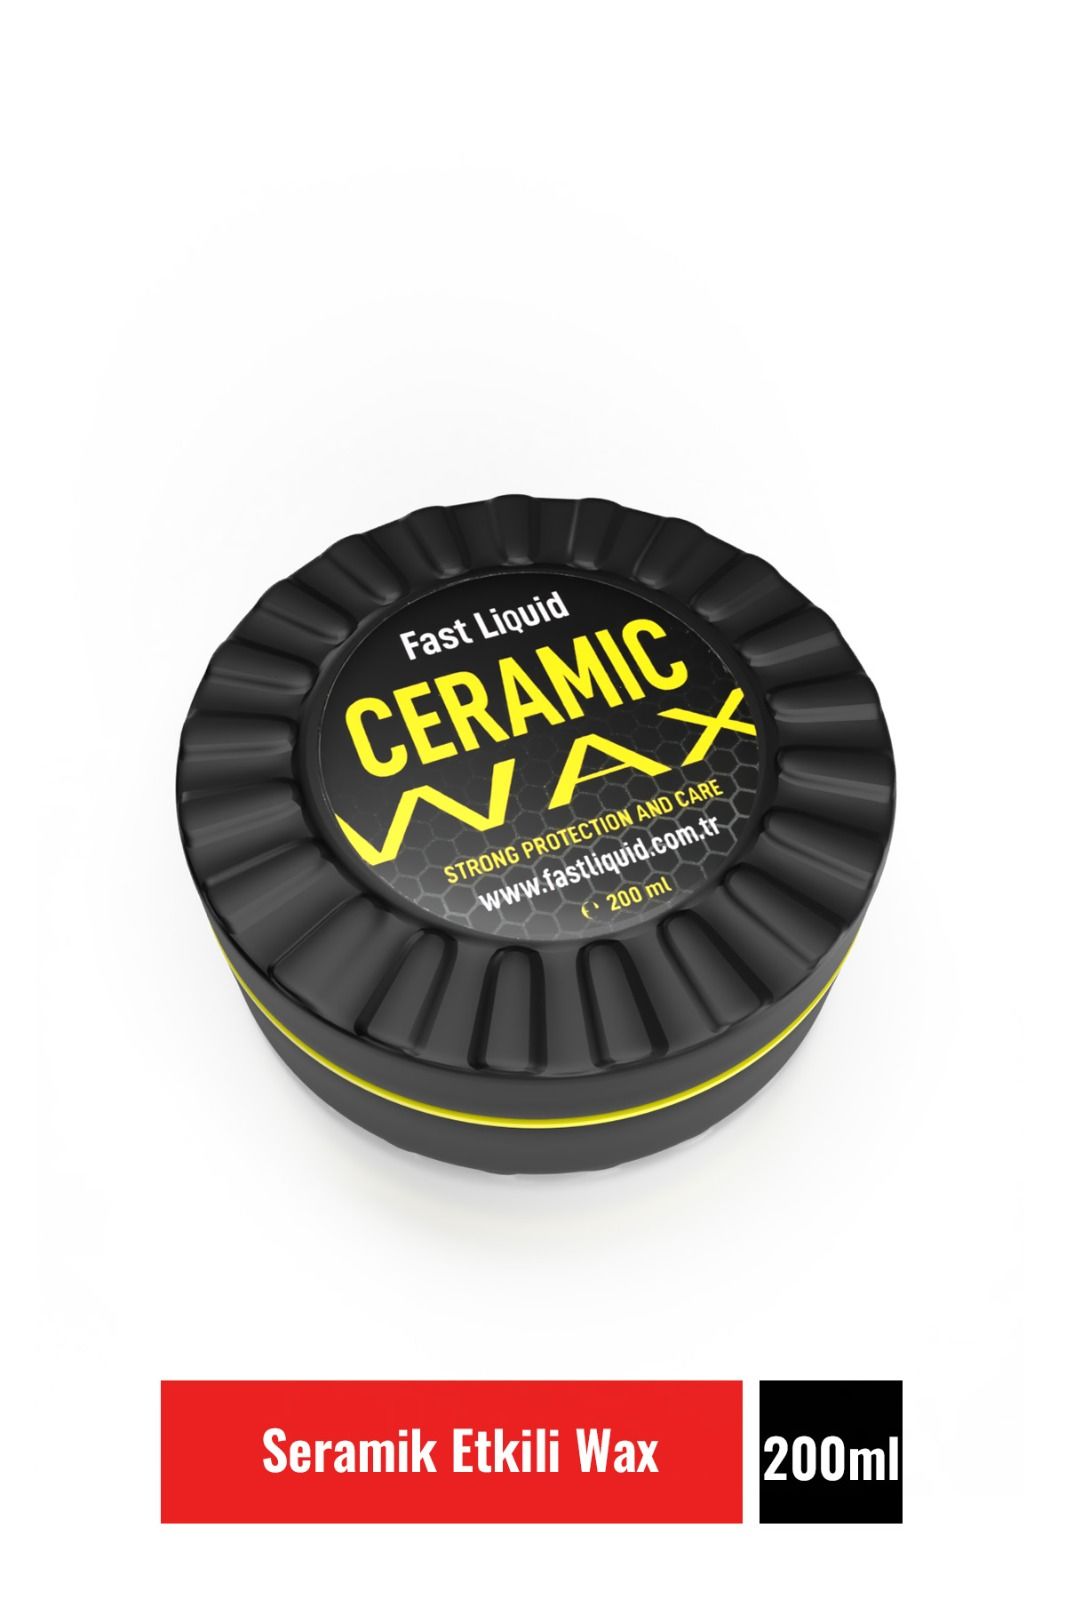 CERAMIC WAX 200 ML Seramik Etkili WaX